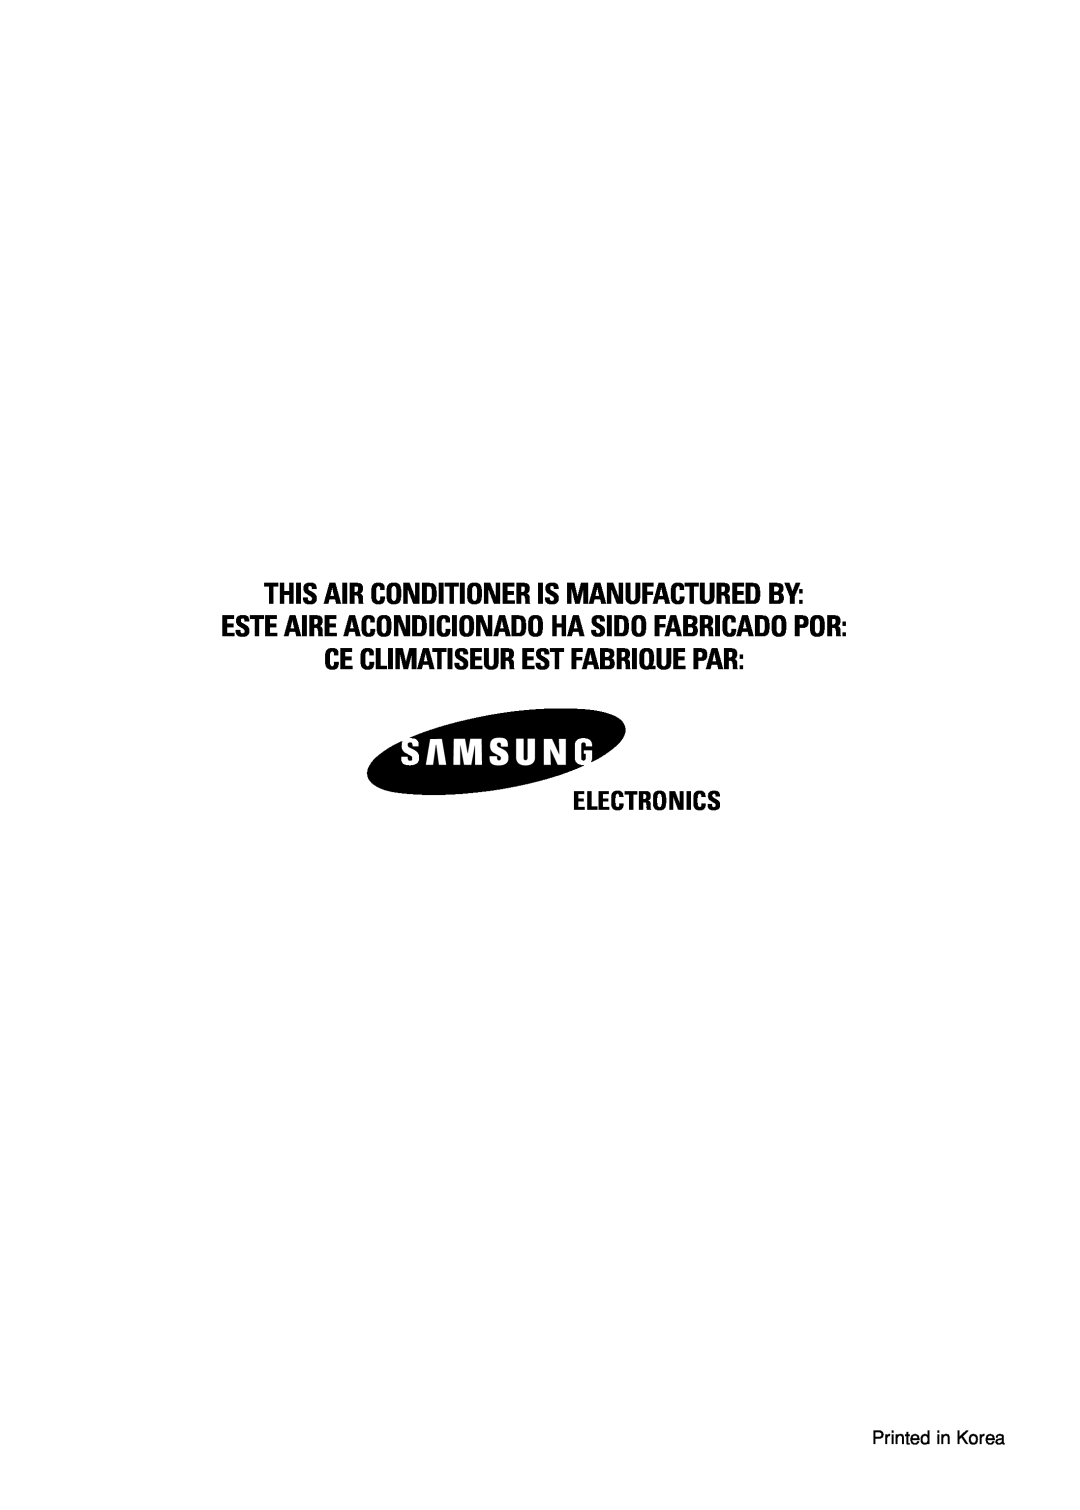 Samsung AST18S0GE Electronics, This Air Conditioner Is Manufactured By, Este Aire Acondicionado Ha Sido Fabricado Por 